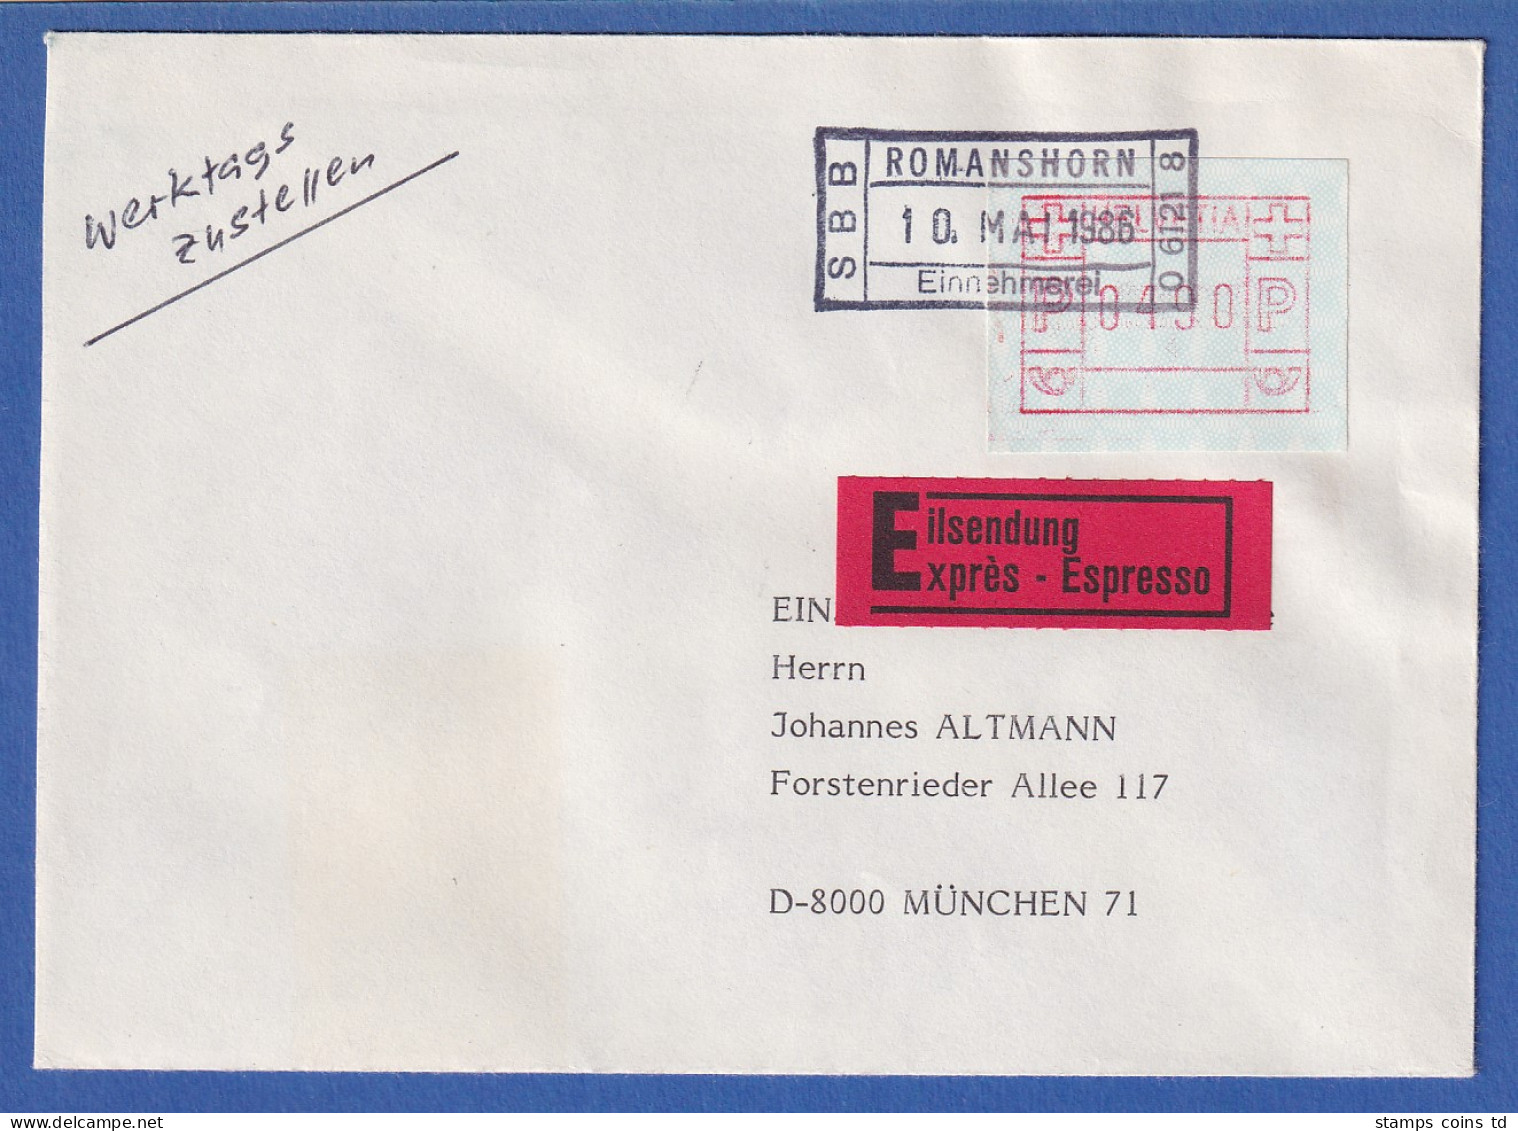 Schweiz FRAMA-ATM Mi-Nr. 3.5b Wert 490 Auf Eilbrief Aus Romanshorn Nach München - Automatenmarken